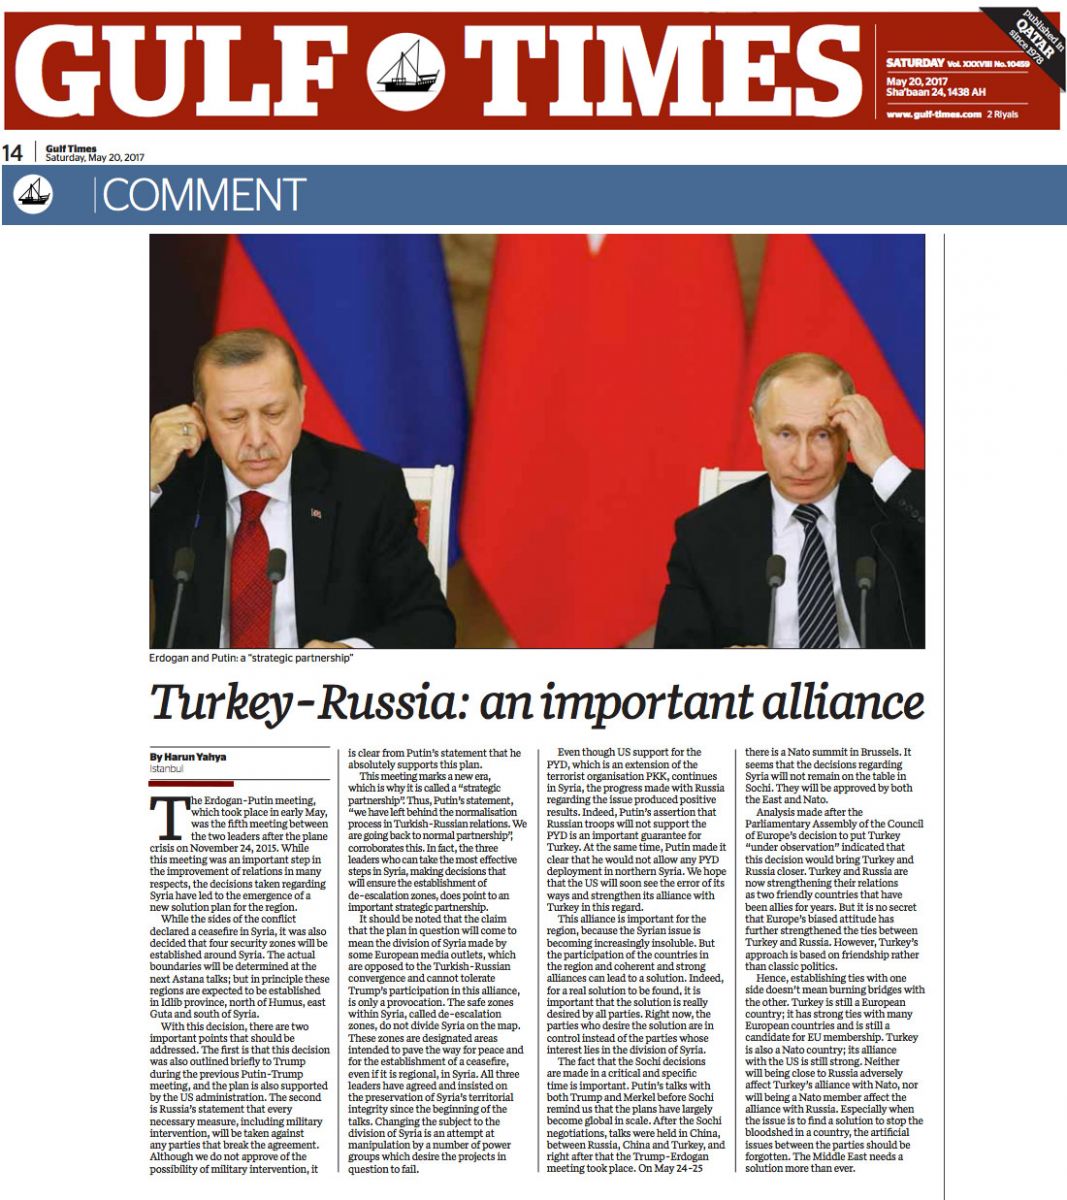 Türkiye-Rusya: Önemli İttifak